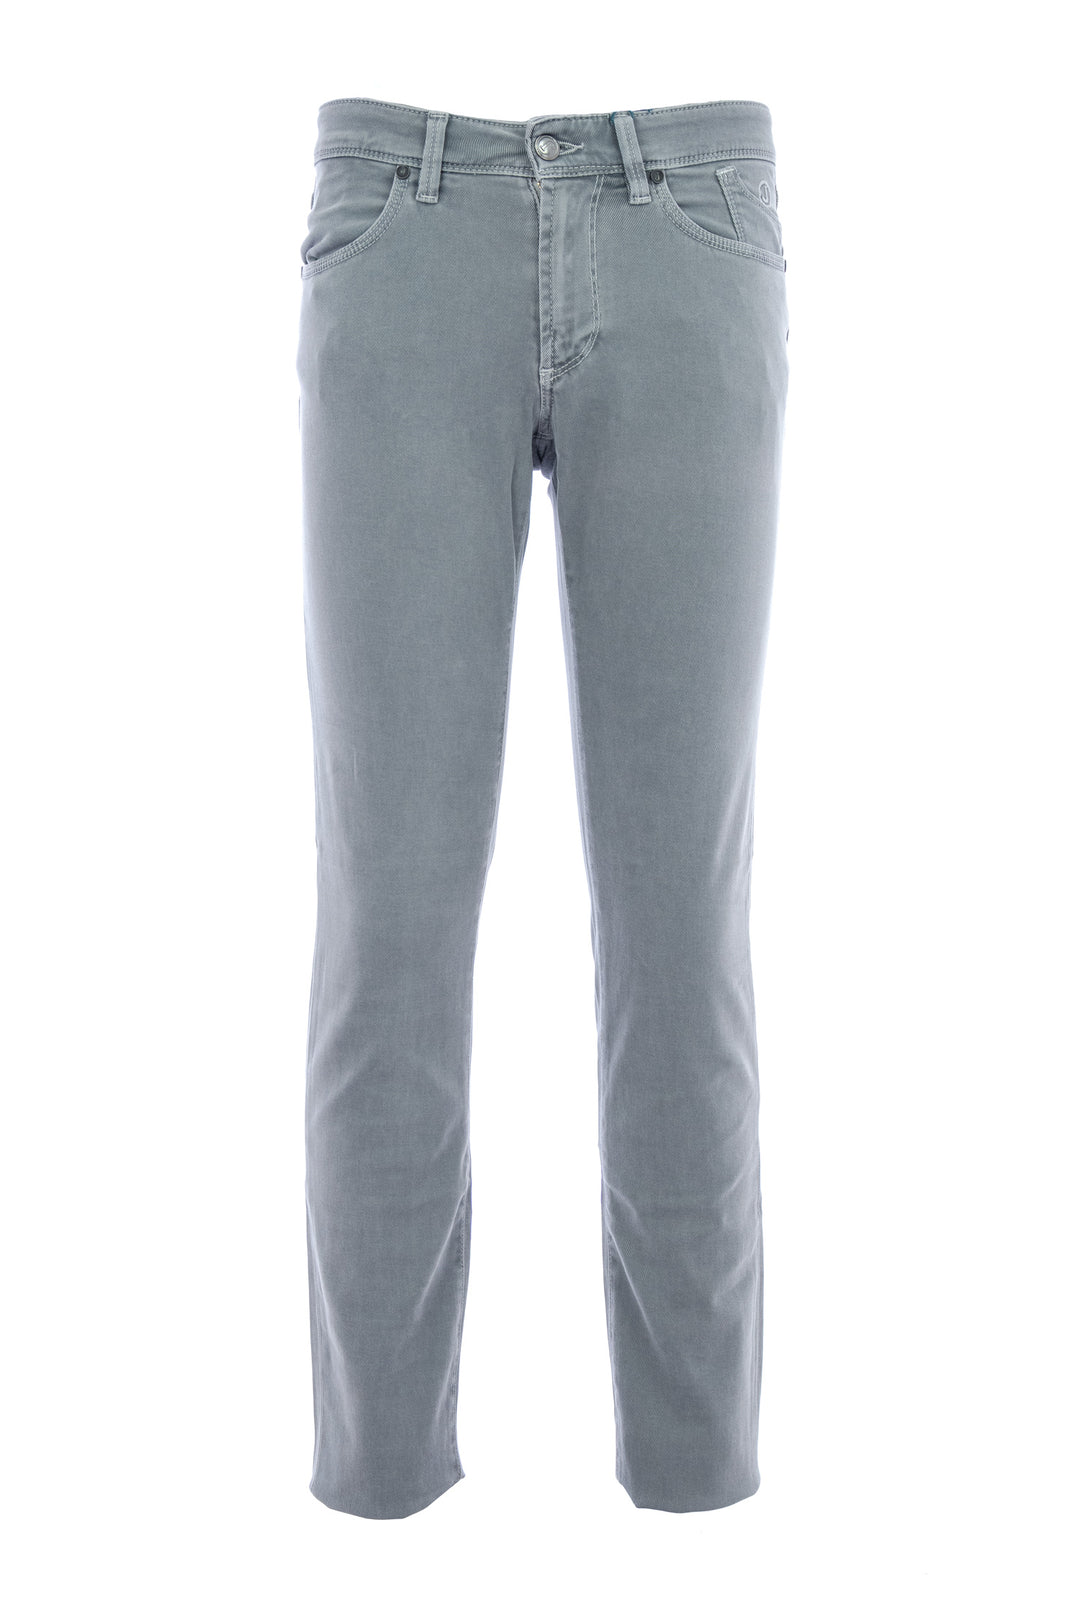 JECKERSON Pantalone grigio 5 tasche stretch in cotone - Mancinelli 1954